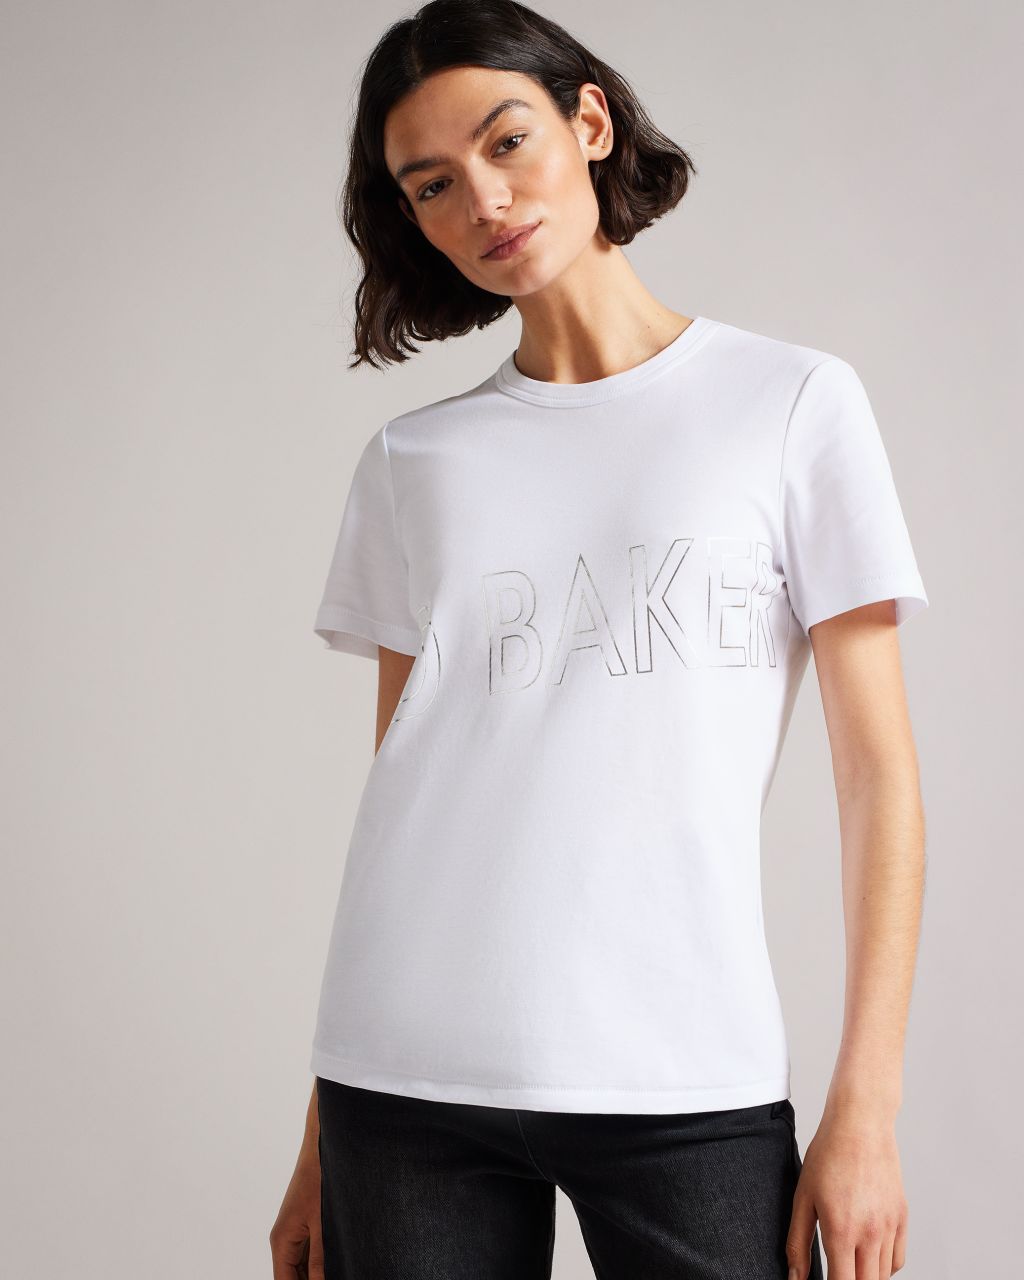 Ted Baker Women's Branded Foil Cotton T-Shirt in White, Malom